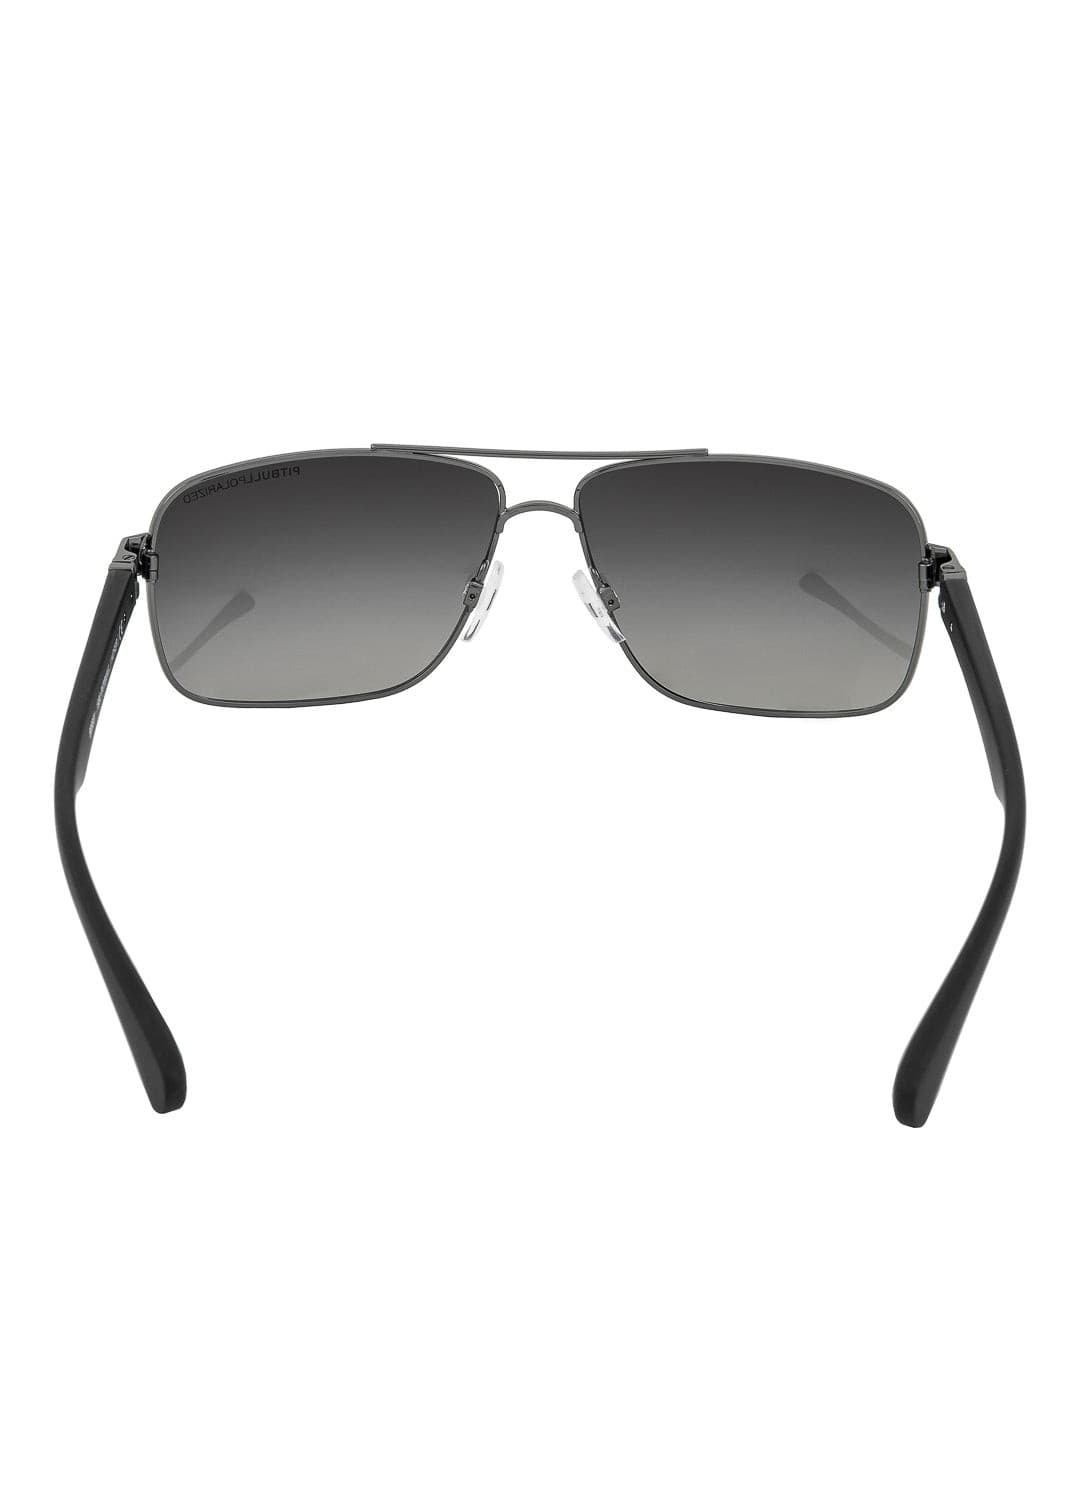 Sunglasses Black HOFER.